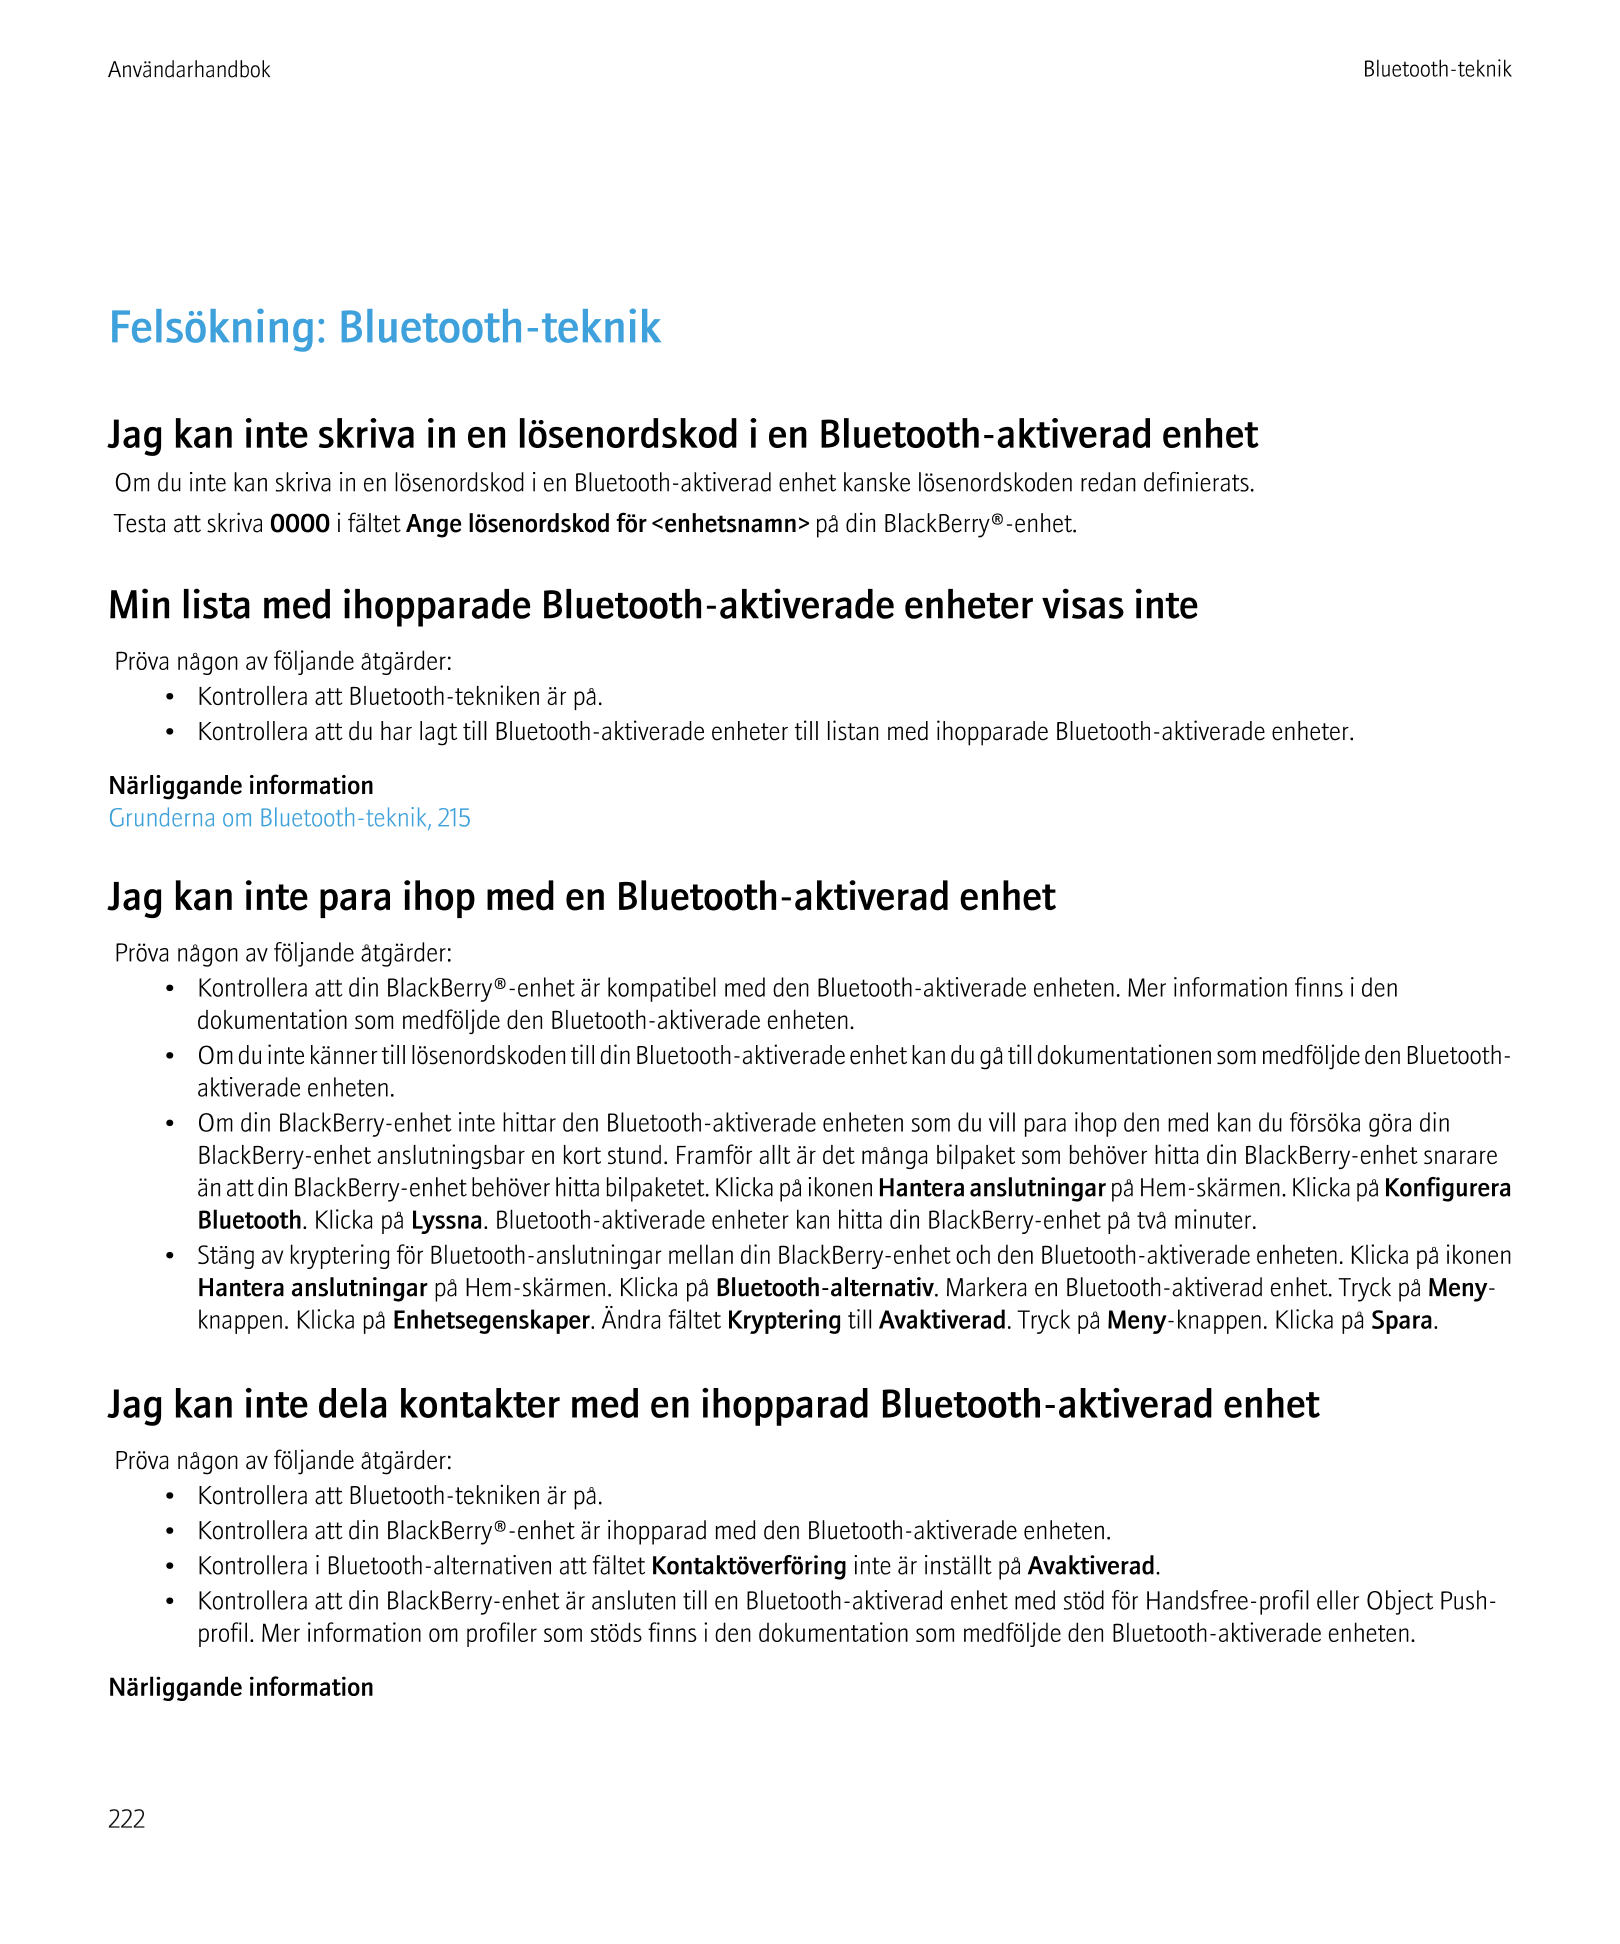 Användarhandbok Bluetooth-teknik
Felsökning: Bluetooth-teknik
Jag kan inte skriva in en lösenordskod i en Bluetooth-aktiverad en